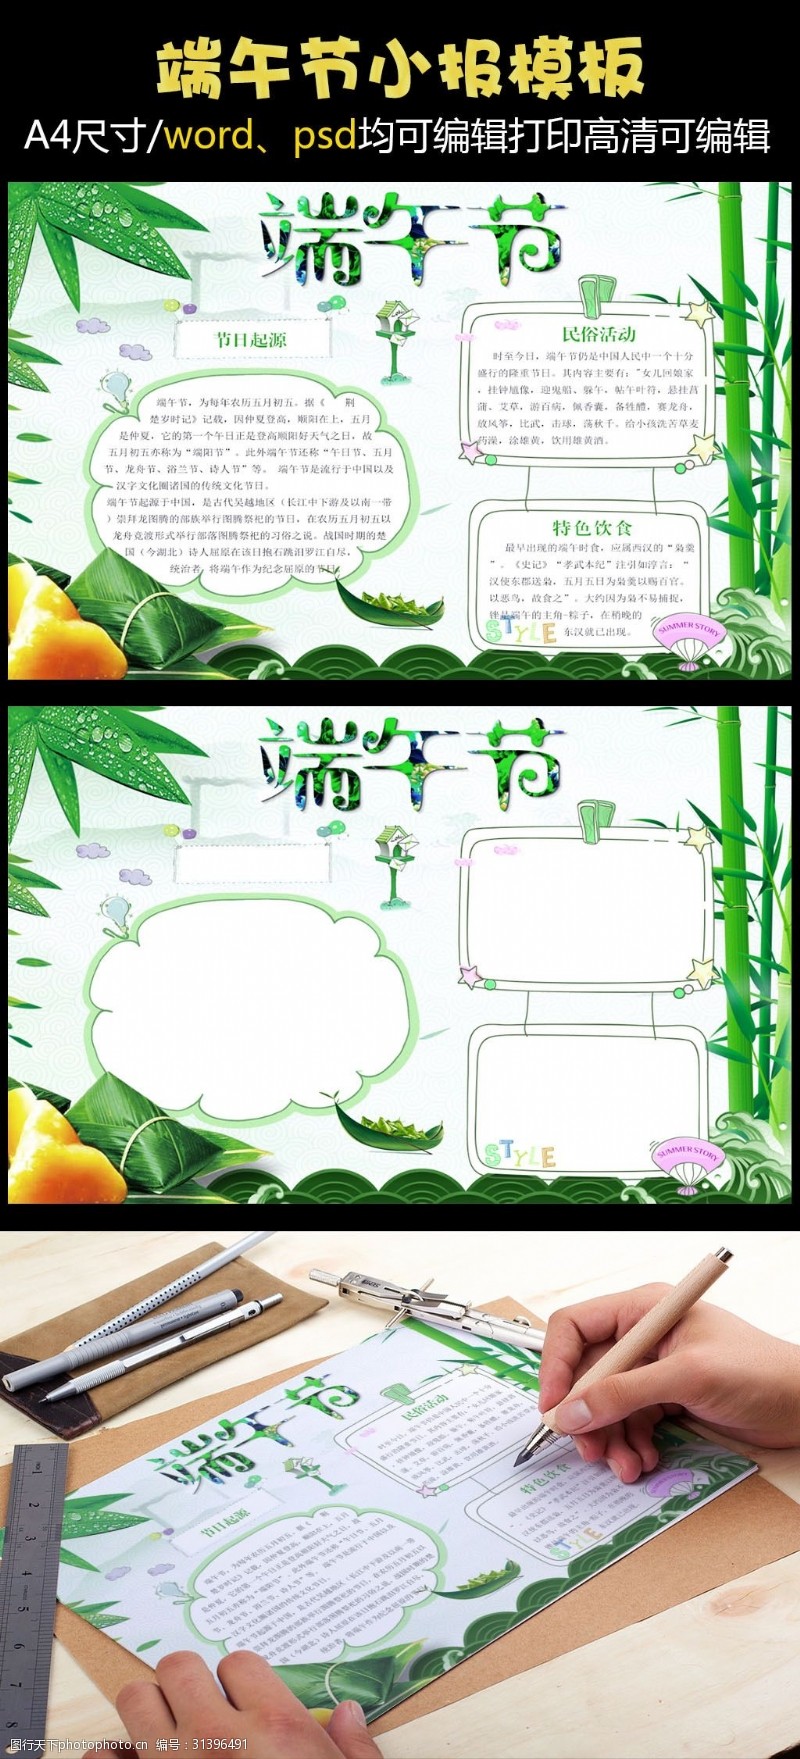 新年限时特惠国庆节促销打折活动宣传海报模板